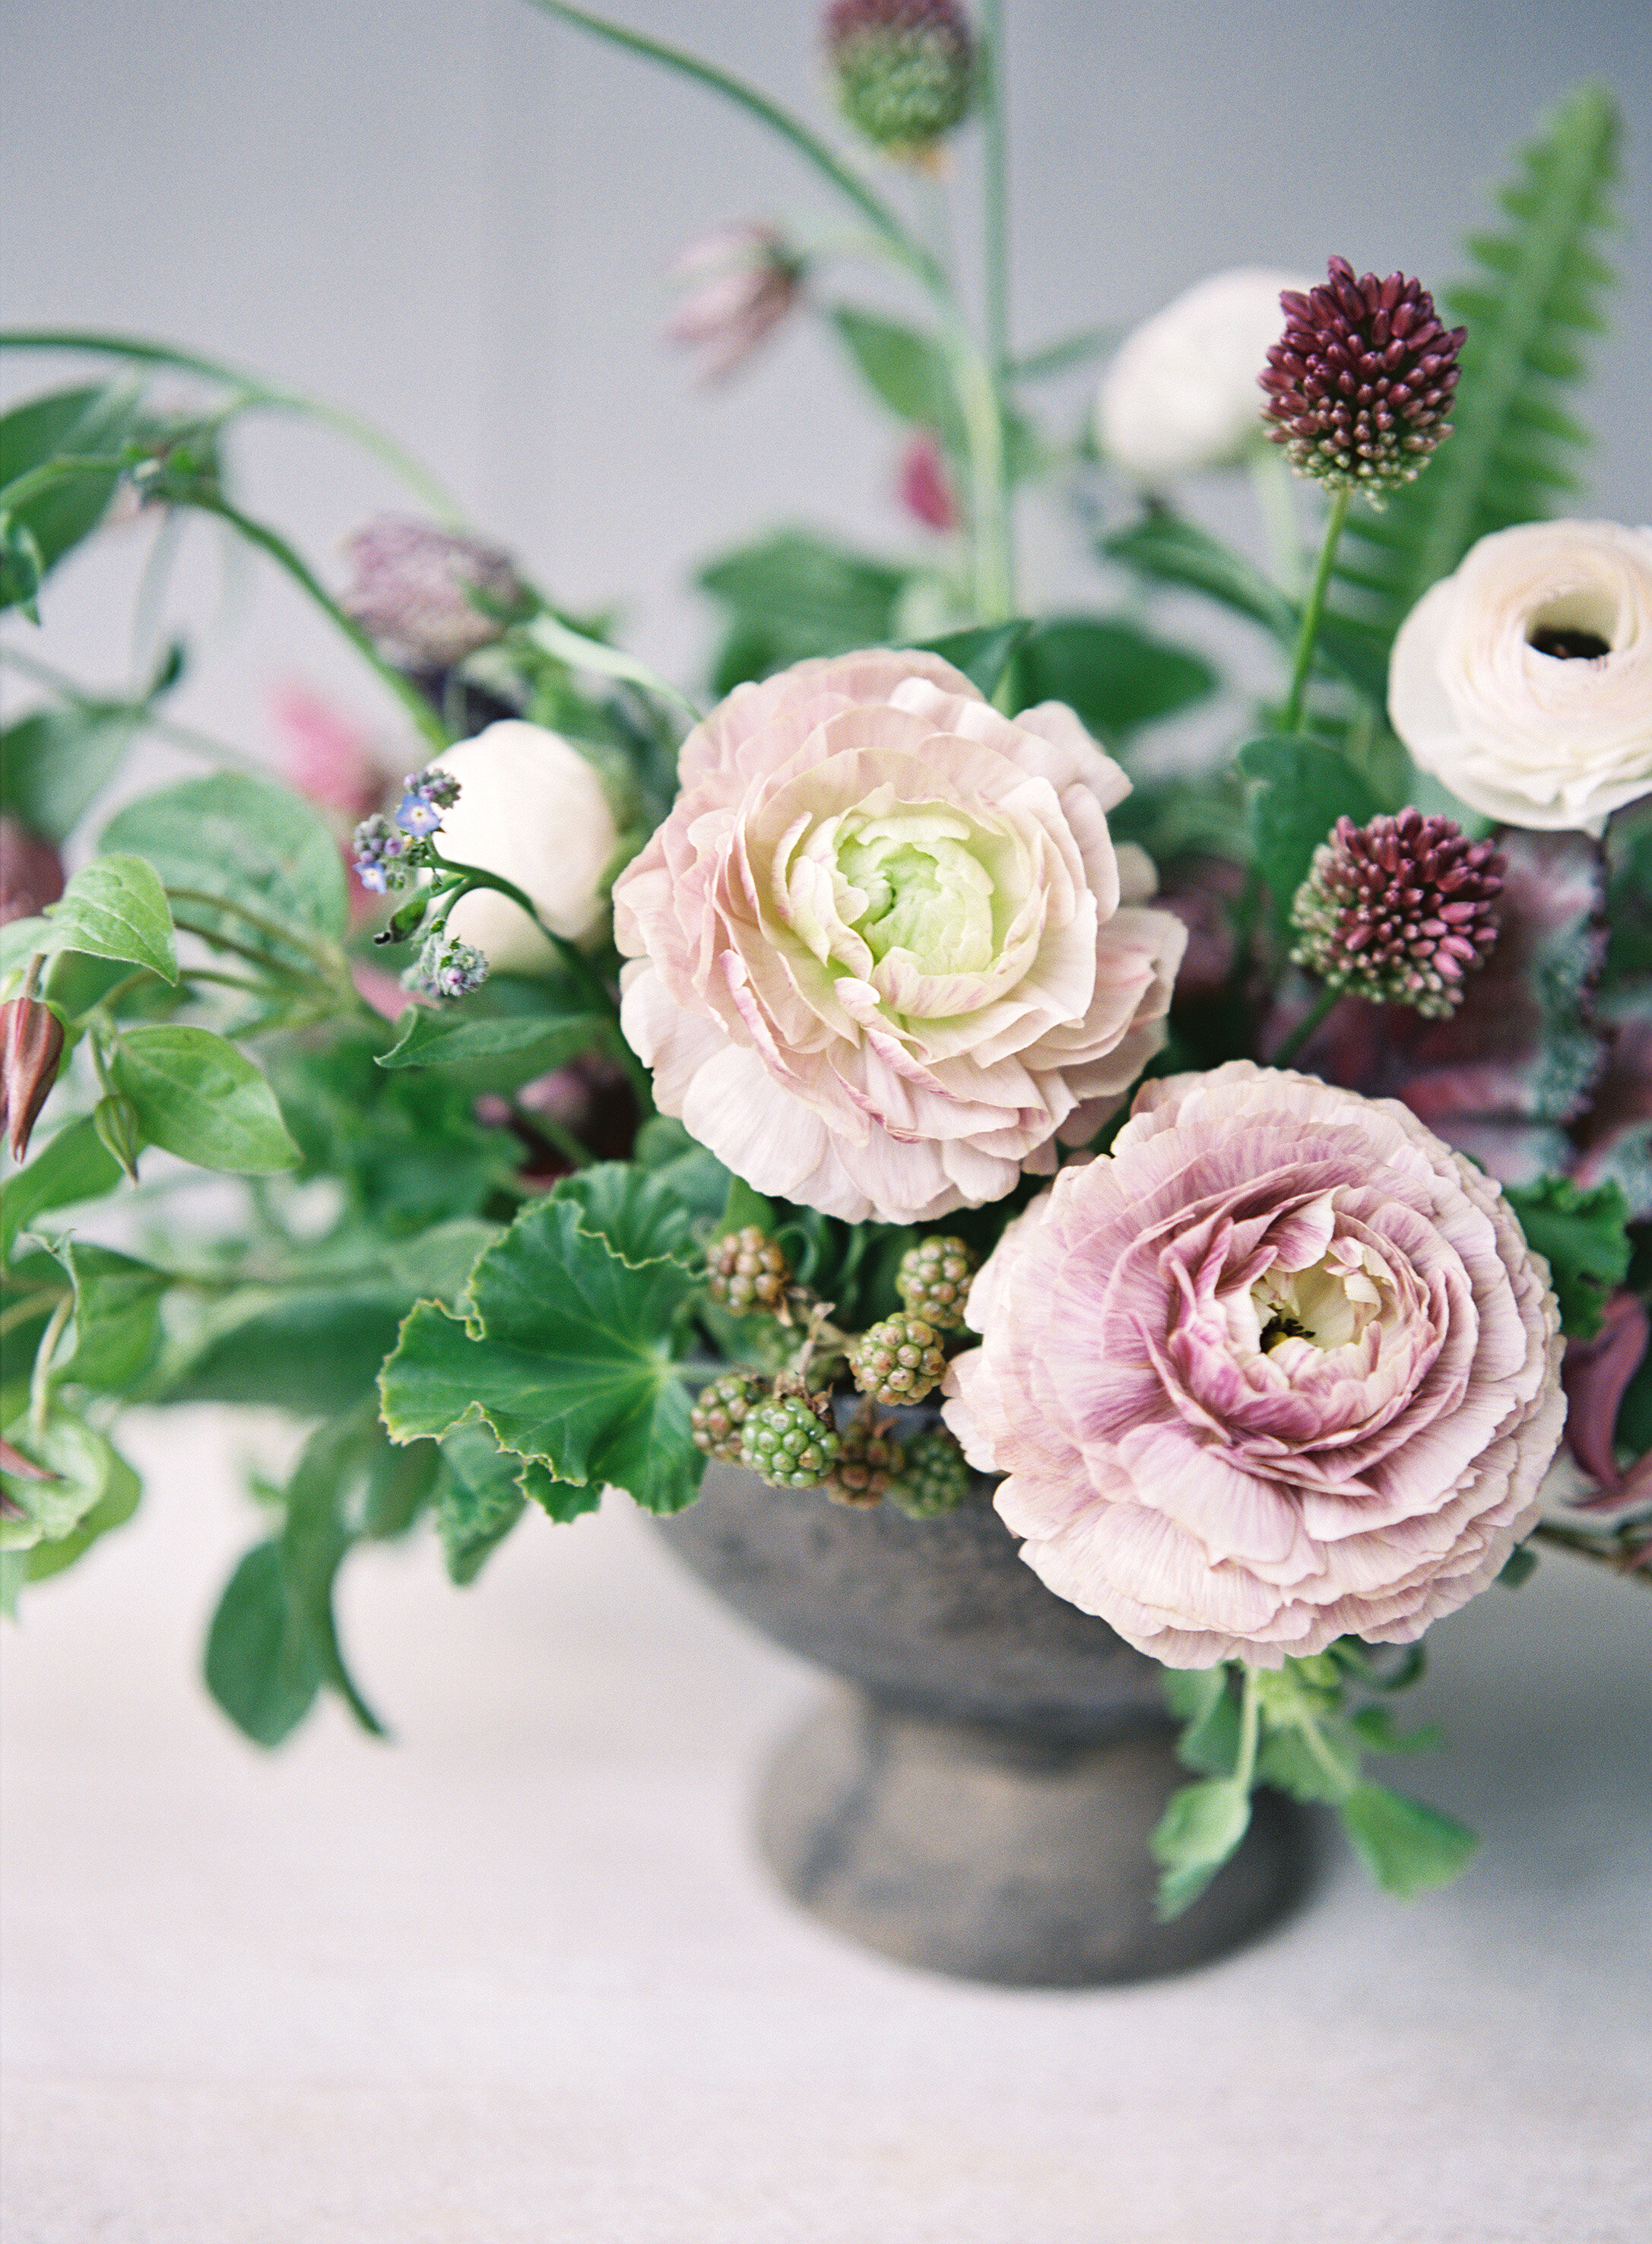 18 Silk Allium & Billy Button Flower Arrangement w/Glass Vase